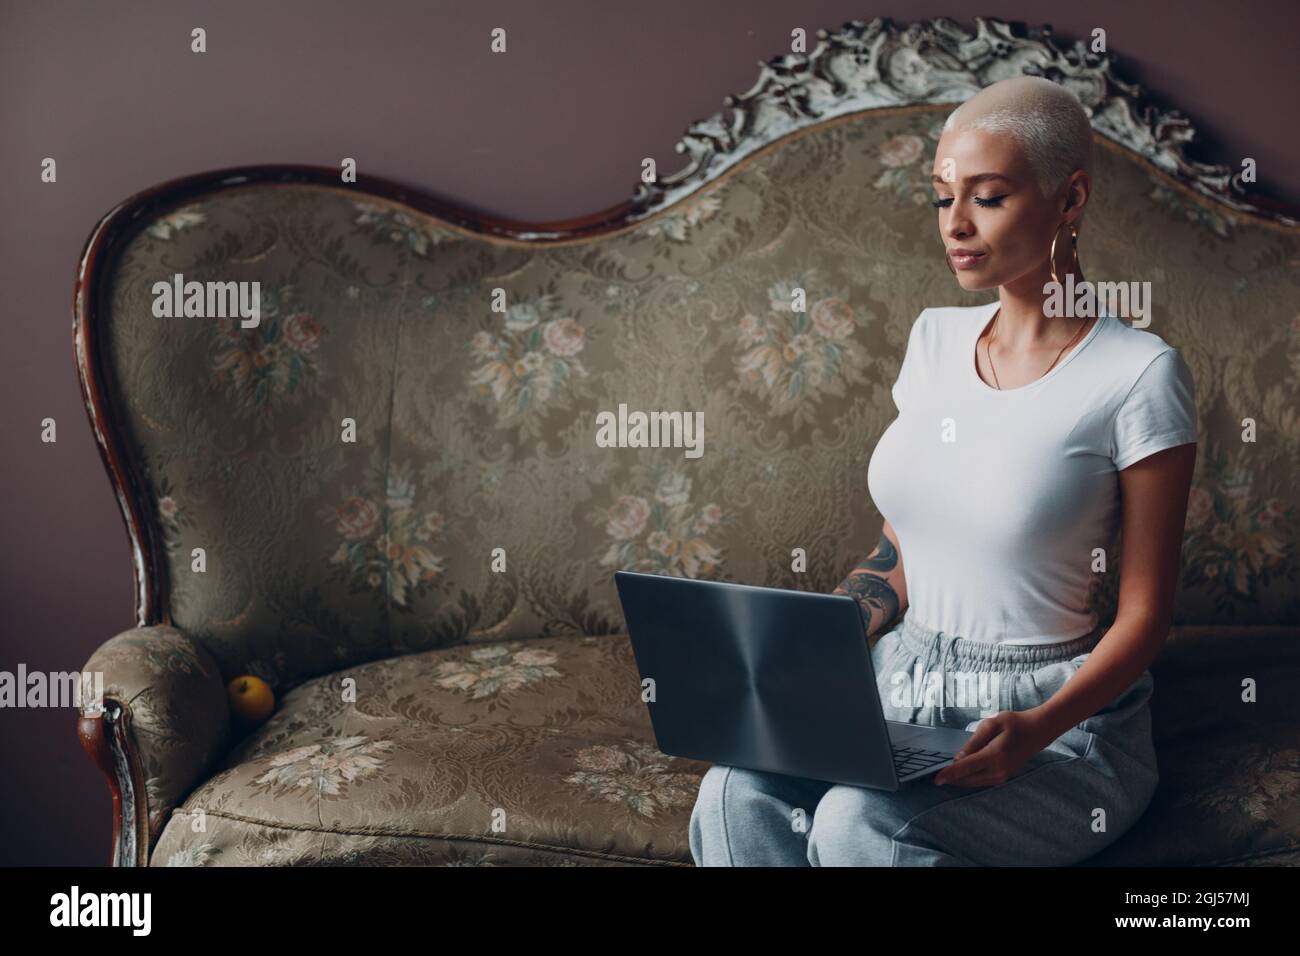 Eine junge Frau mit kurzen blonden Haaren, die mit einem Laptop auf einem Vintage-Sofa im Home Office sitzt Stockfoto